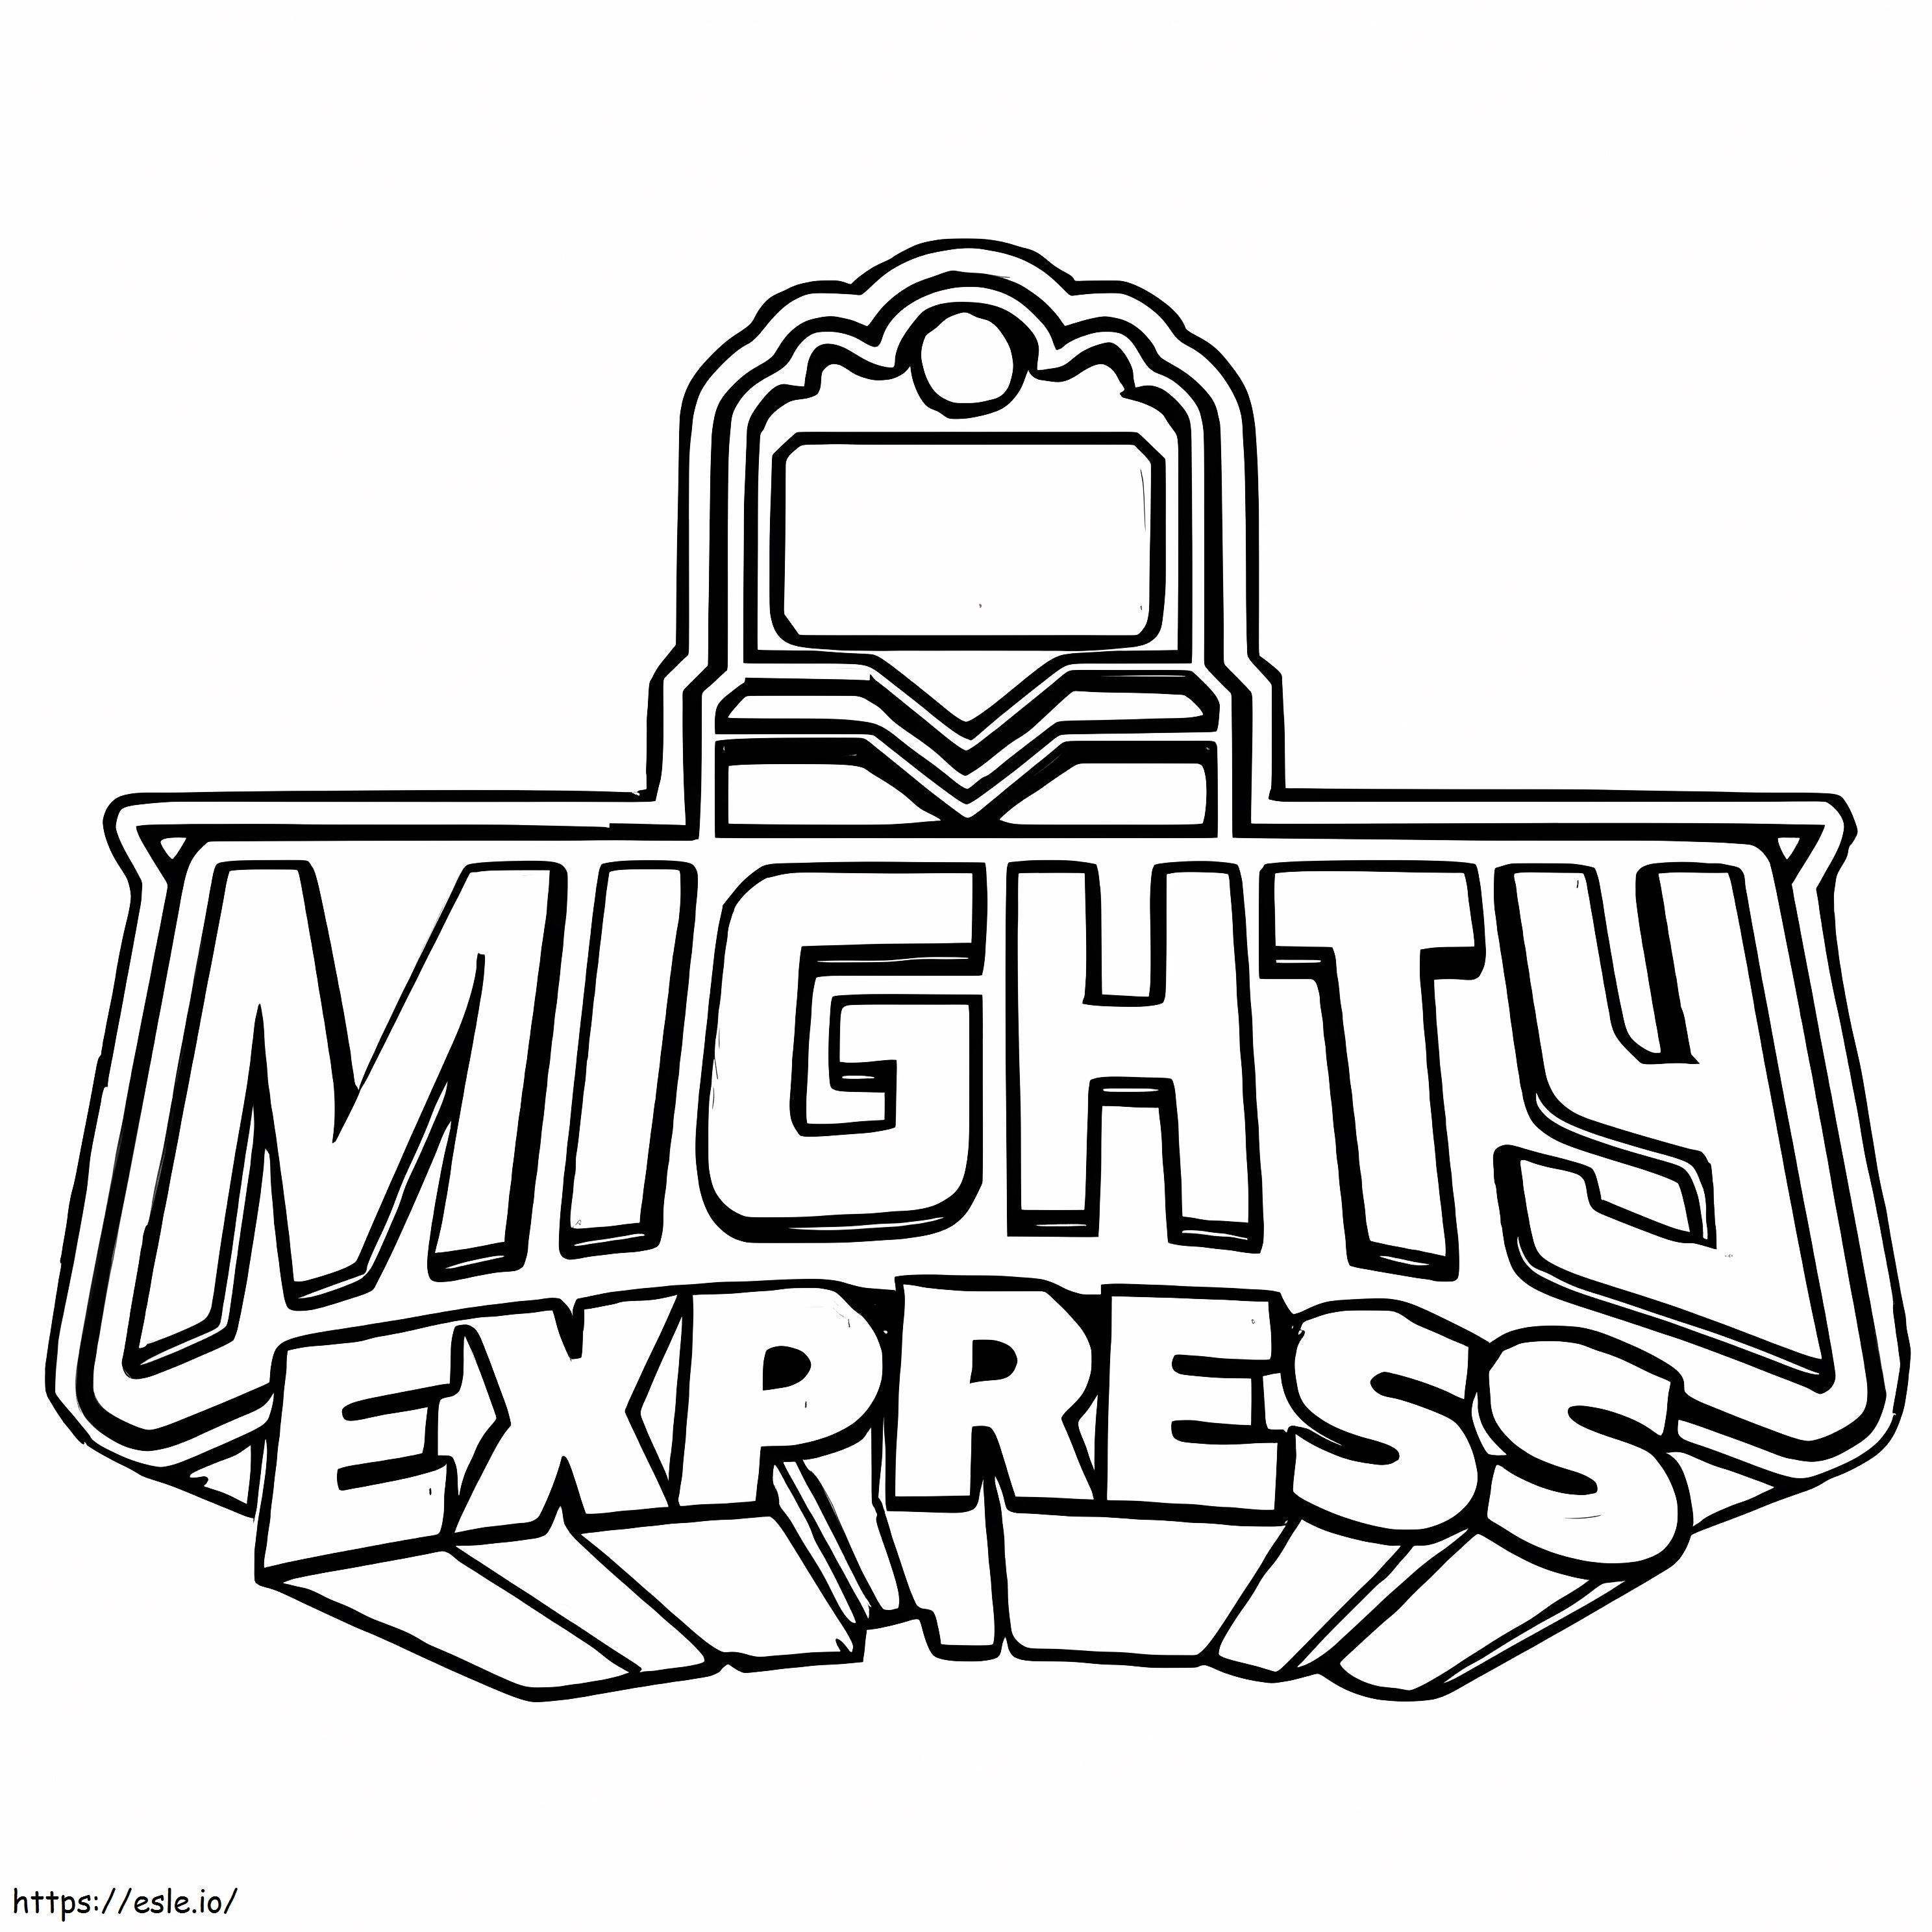 Logo-ul Mighty Express de colorat